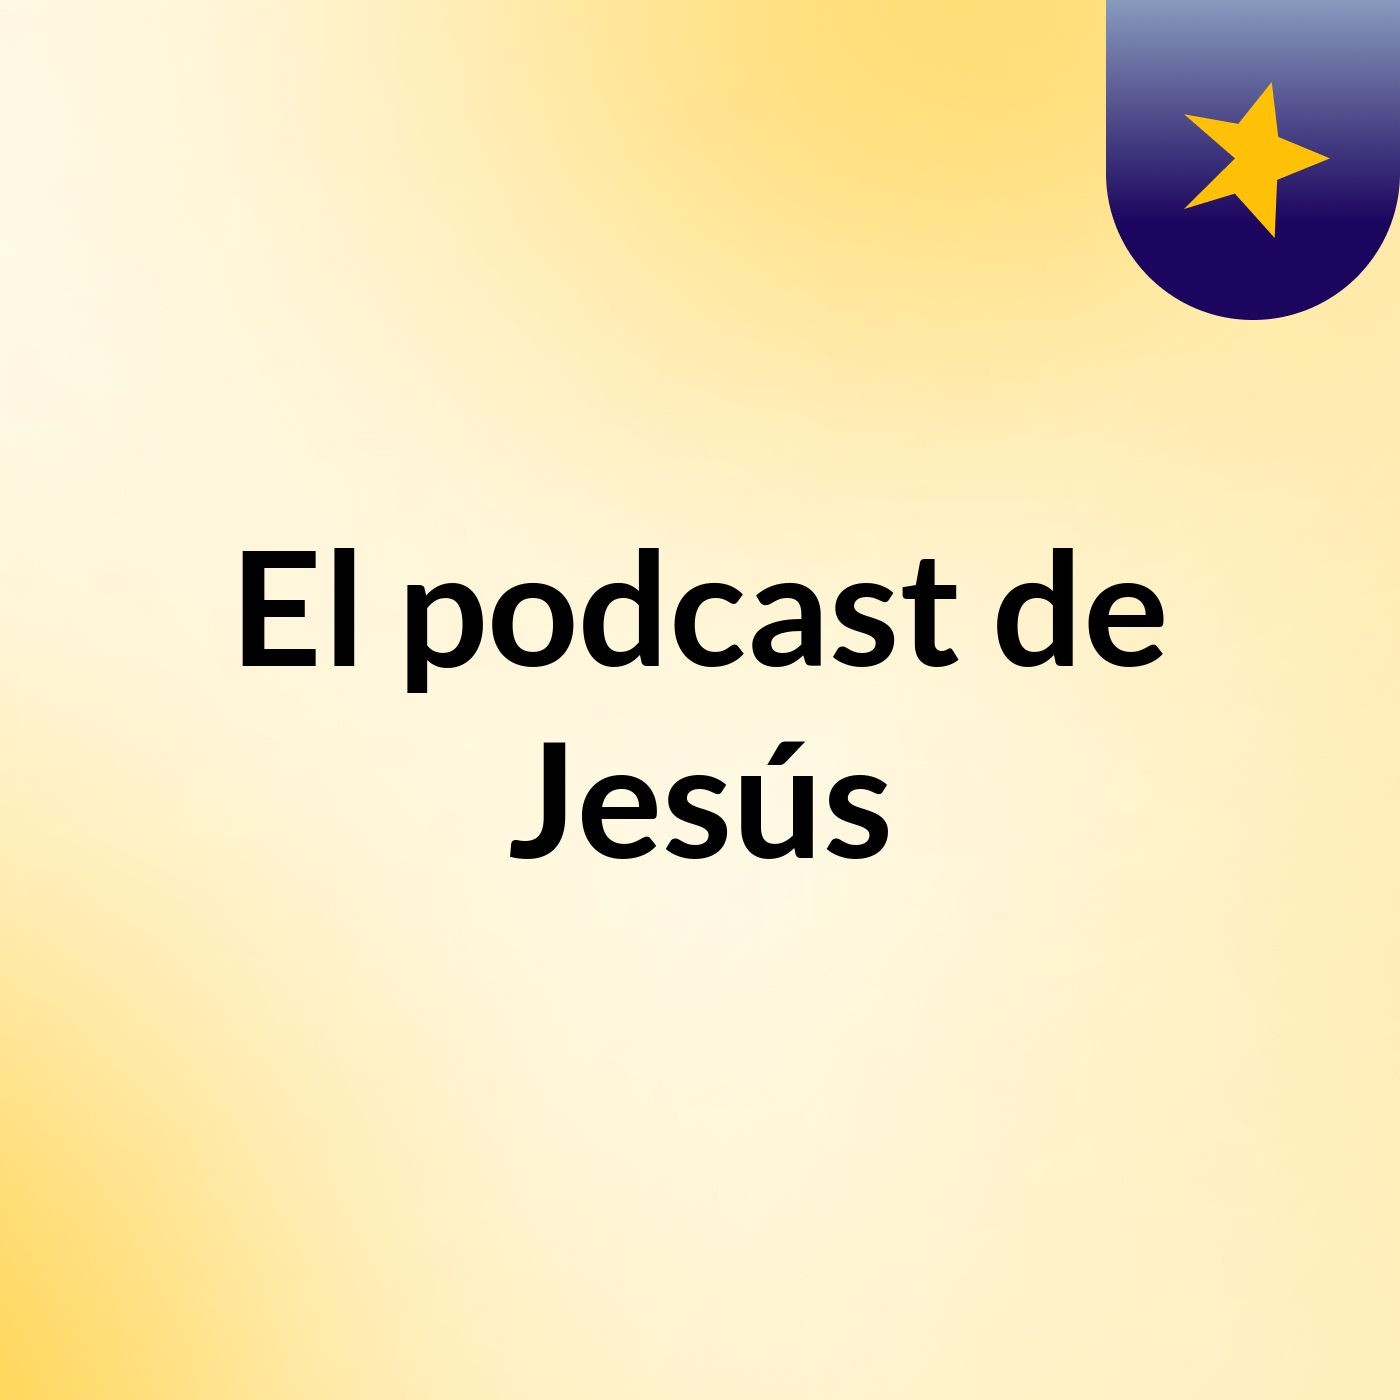 El podcast de Jesús